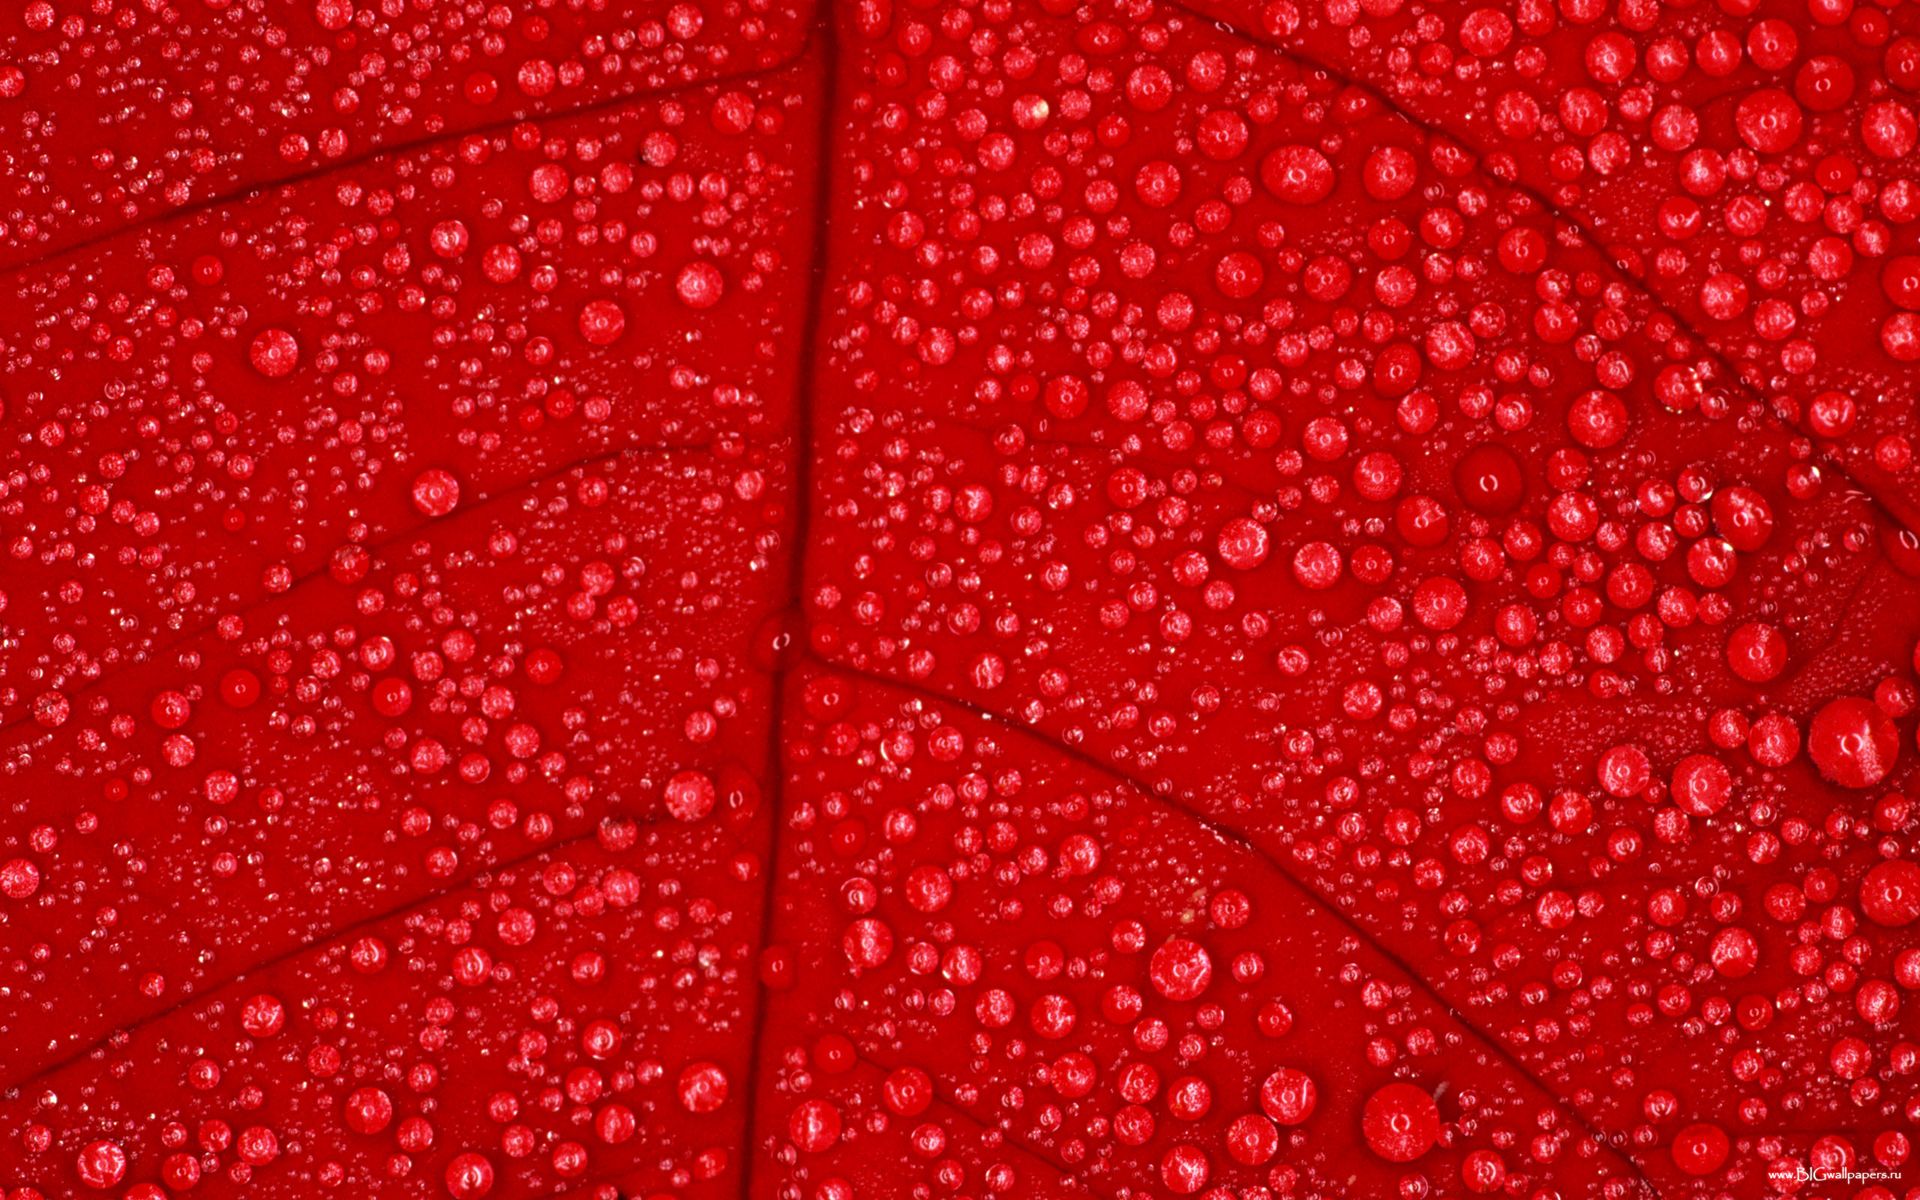 Rain texture 